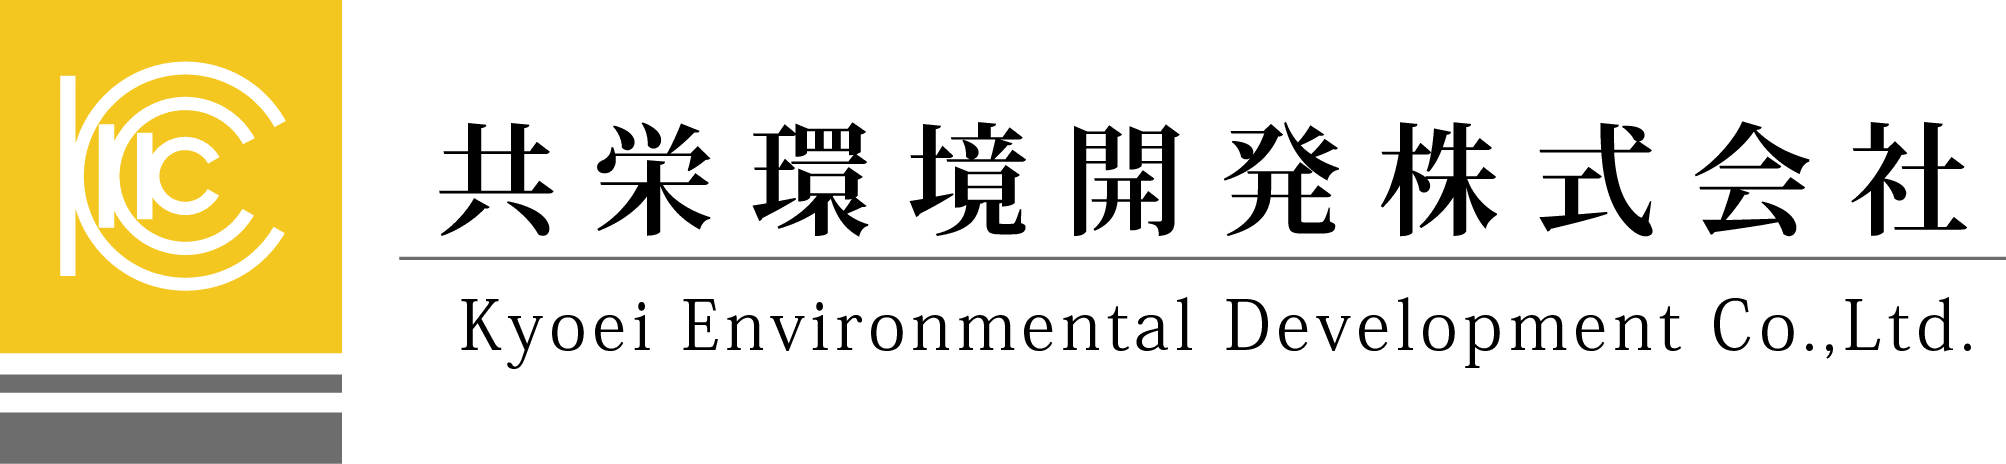 共栄環境開発株式会社のホームページ